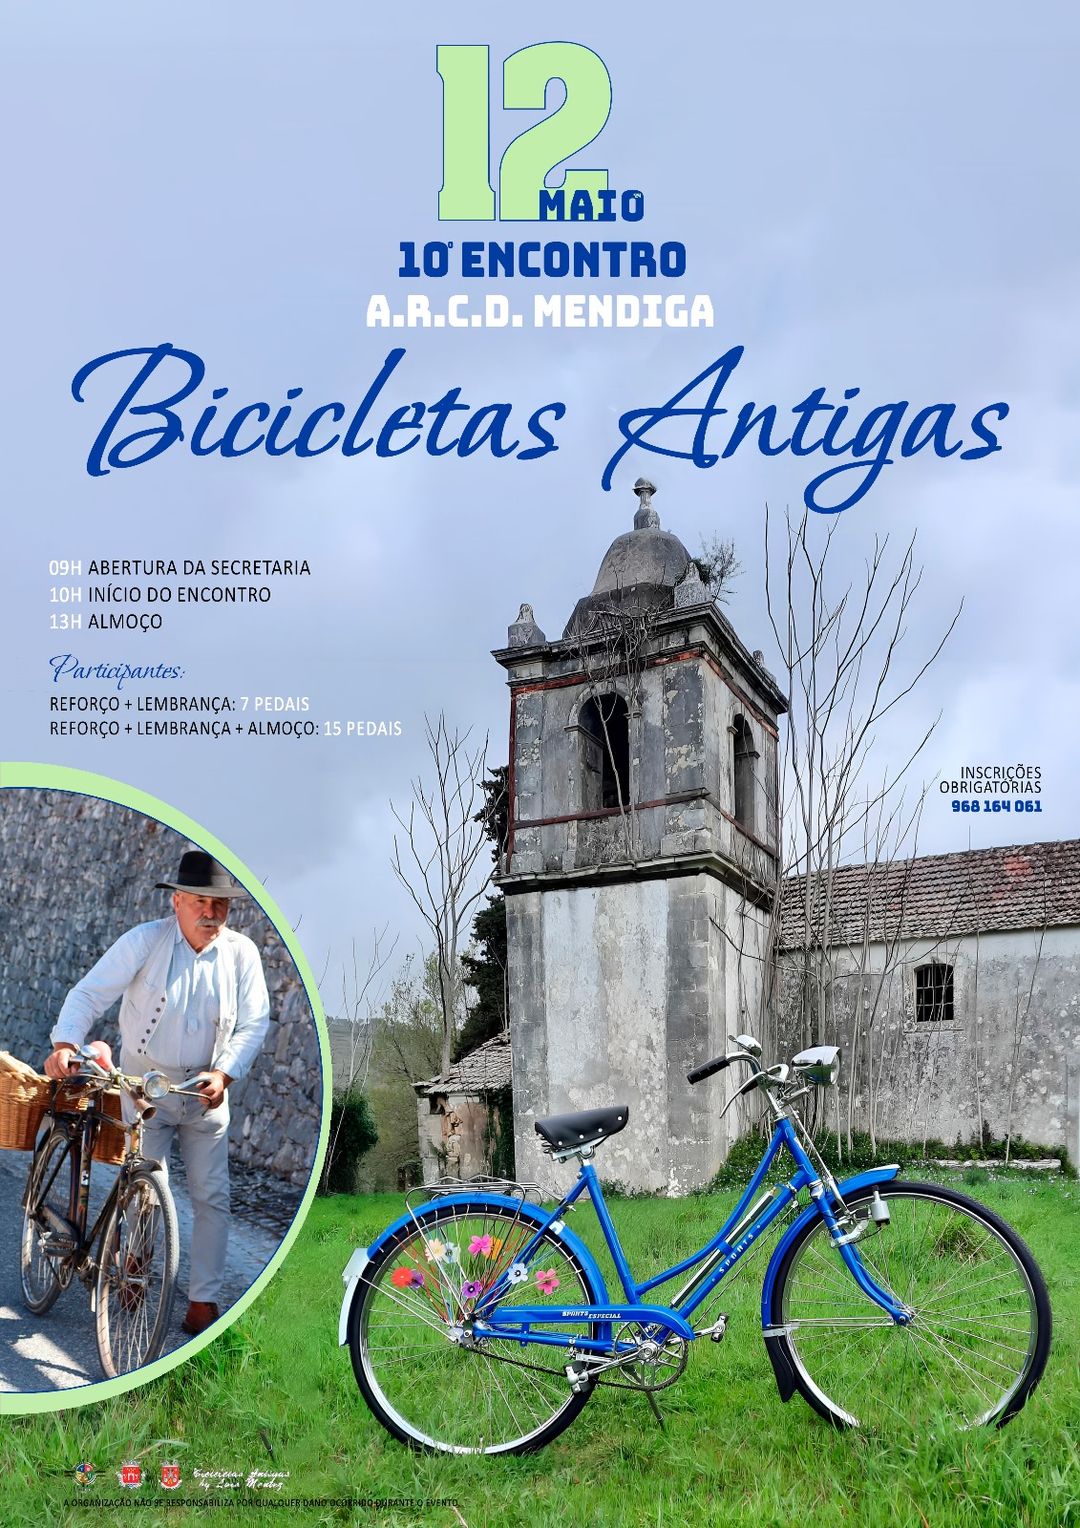 10° Encontro de bicicletas antigas